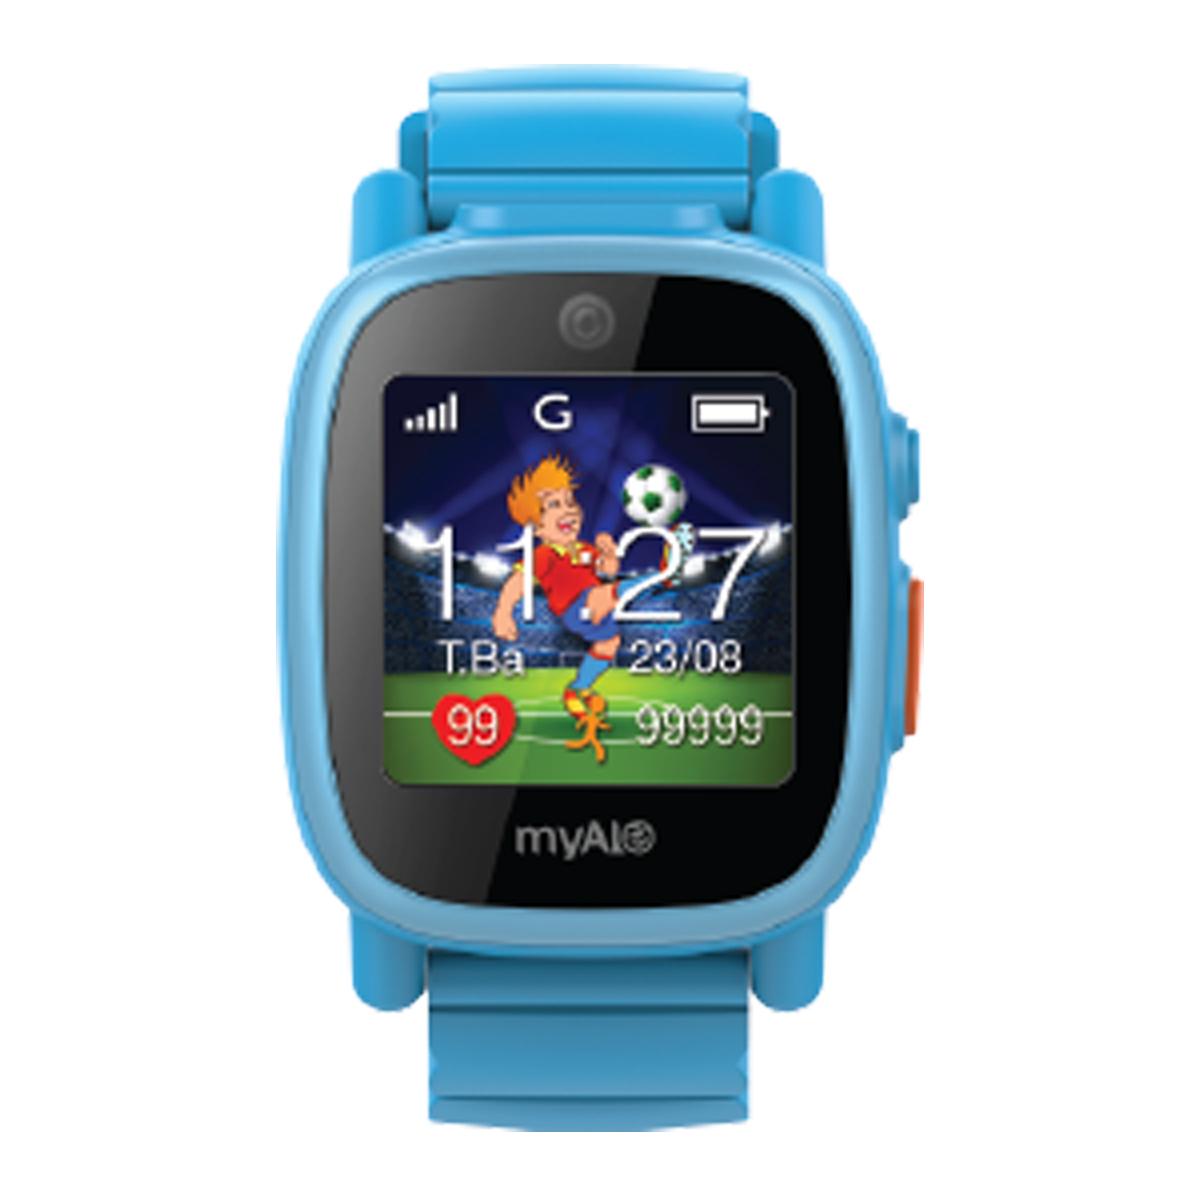 Đồng hồ thông minh định vị trẻ em myAlo KS72C màu xanh